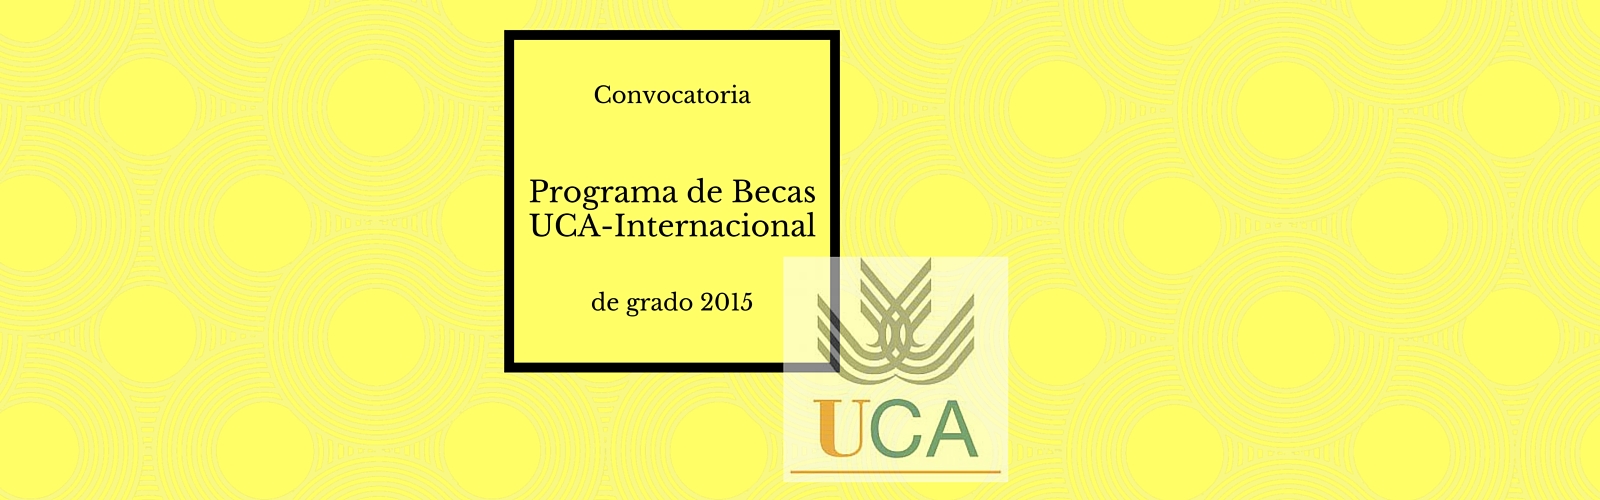 Convocatoria Programa de Becas UCA-Internacional de Grado 2015